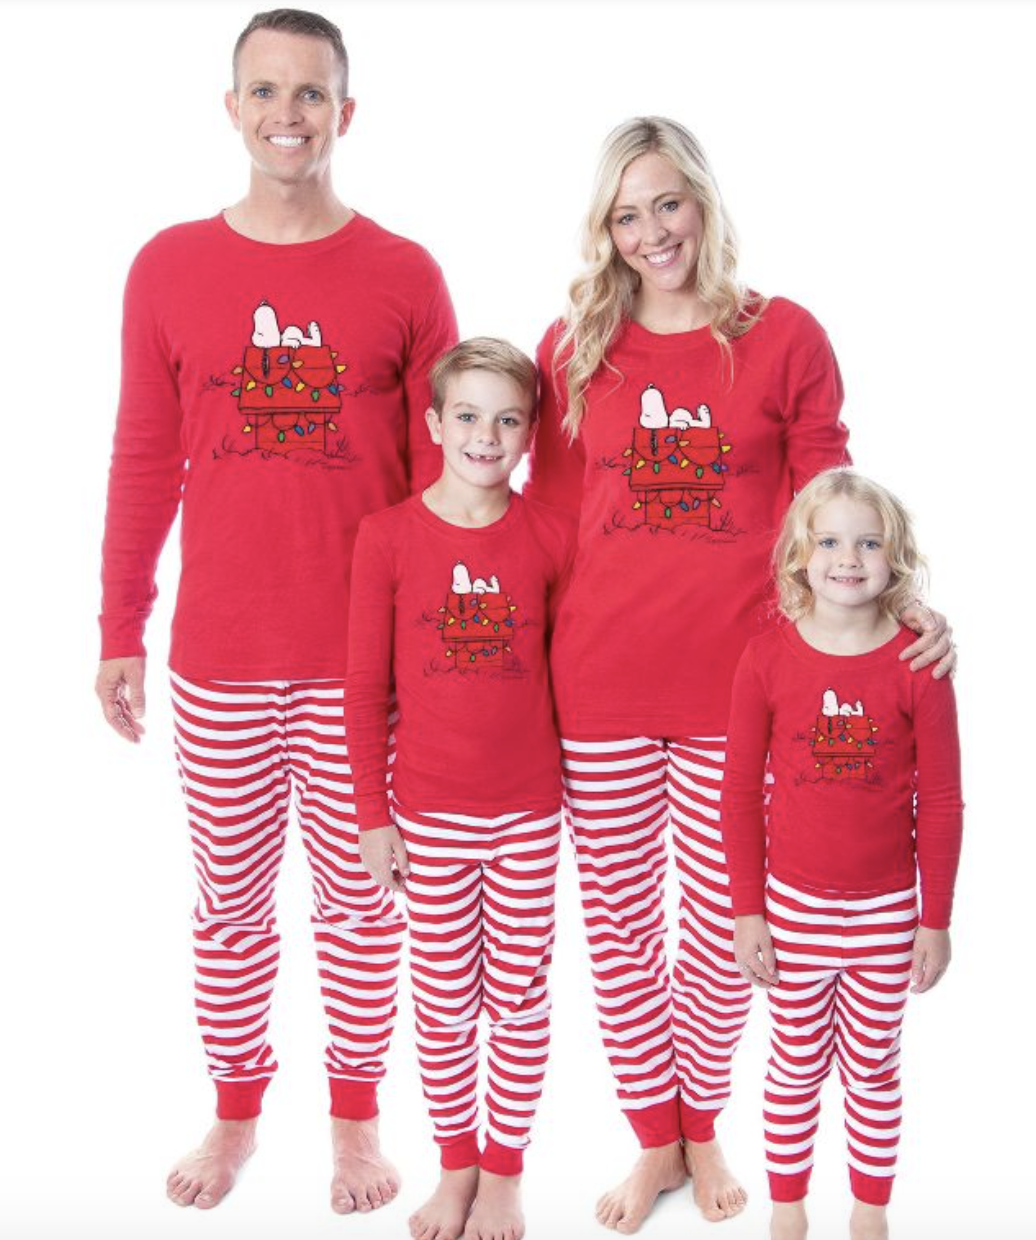 Personalized Family Christmas Pajamas Personalized Family Pajamas Kleding Gender-neutrale kleding volwassenen Pyjamas & Badjassen Pyjama Matching Family PJs ~ Custom Family Christmas PJs ~ Christmas Pajamas 